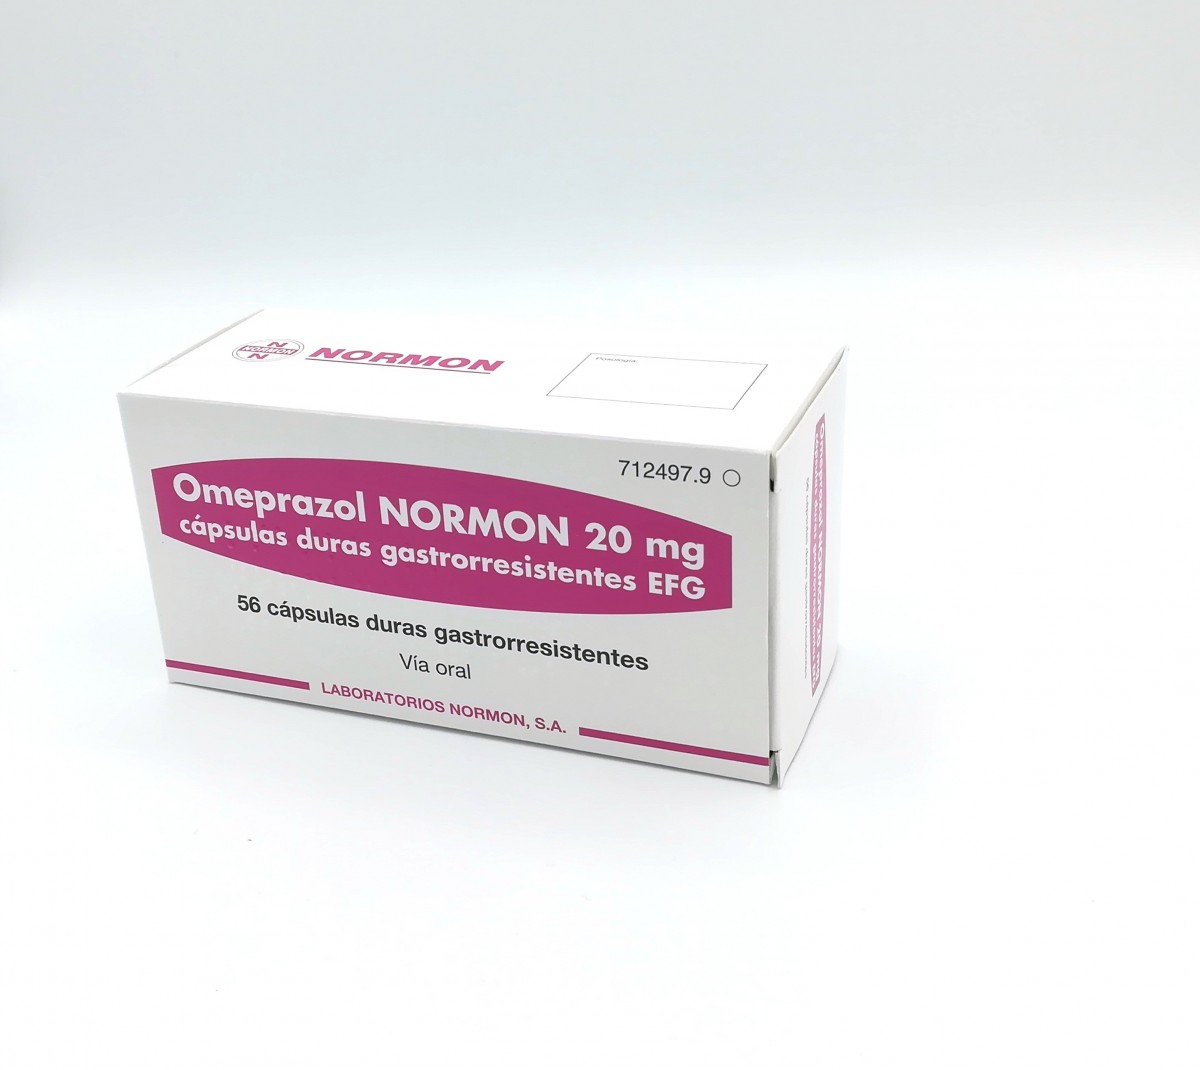 OMEPRAZOL NORMON 20 mg CAPSULAS DURAS GASTRORRESISTENTES EFG , 500 cápsulas fotografía del envase.